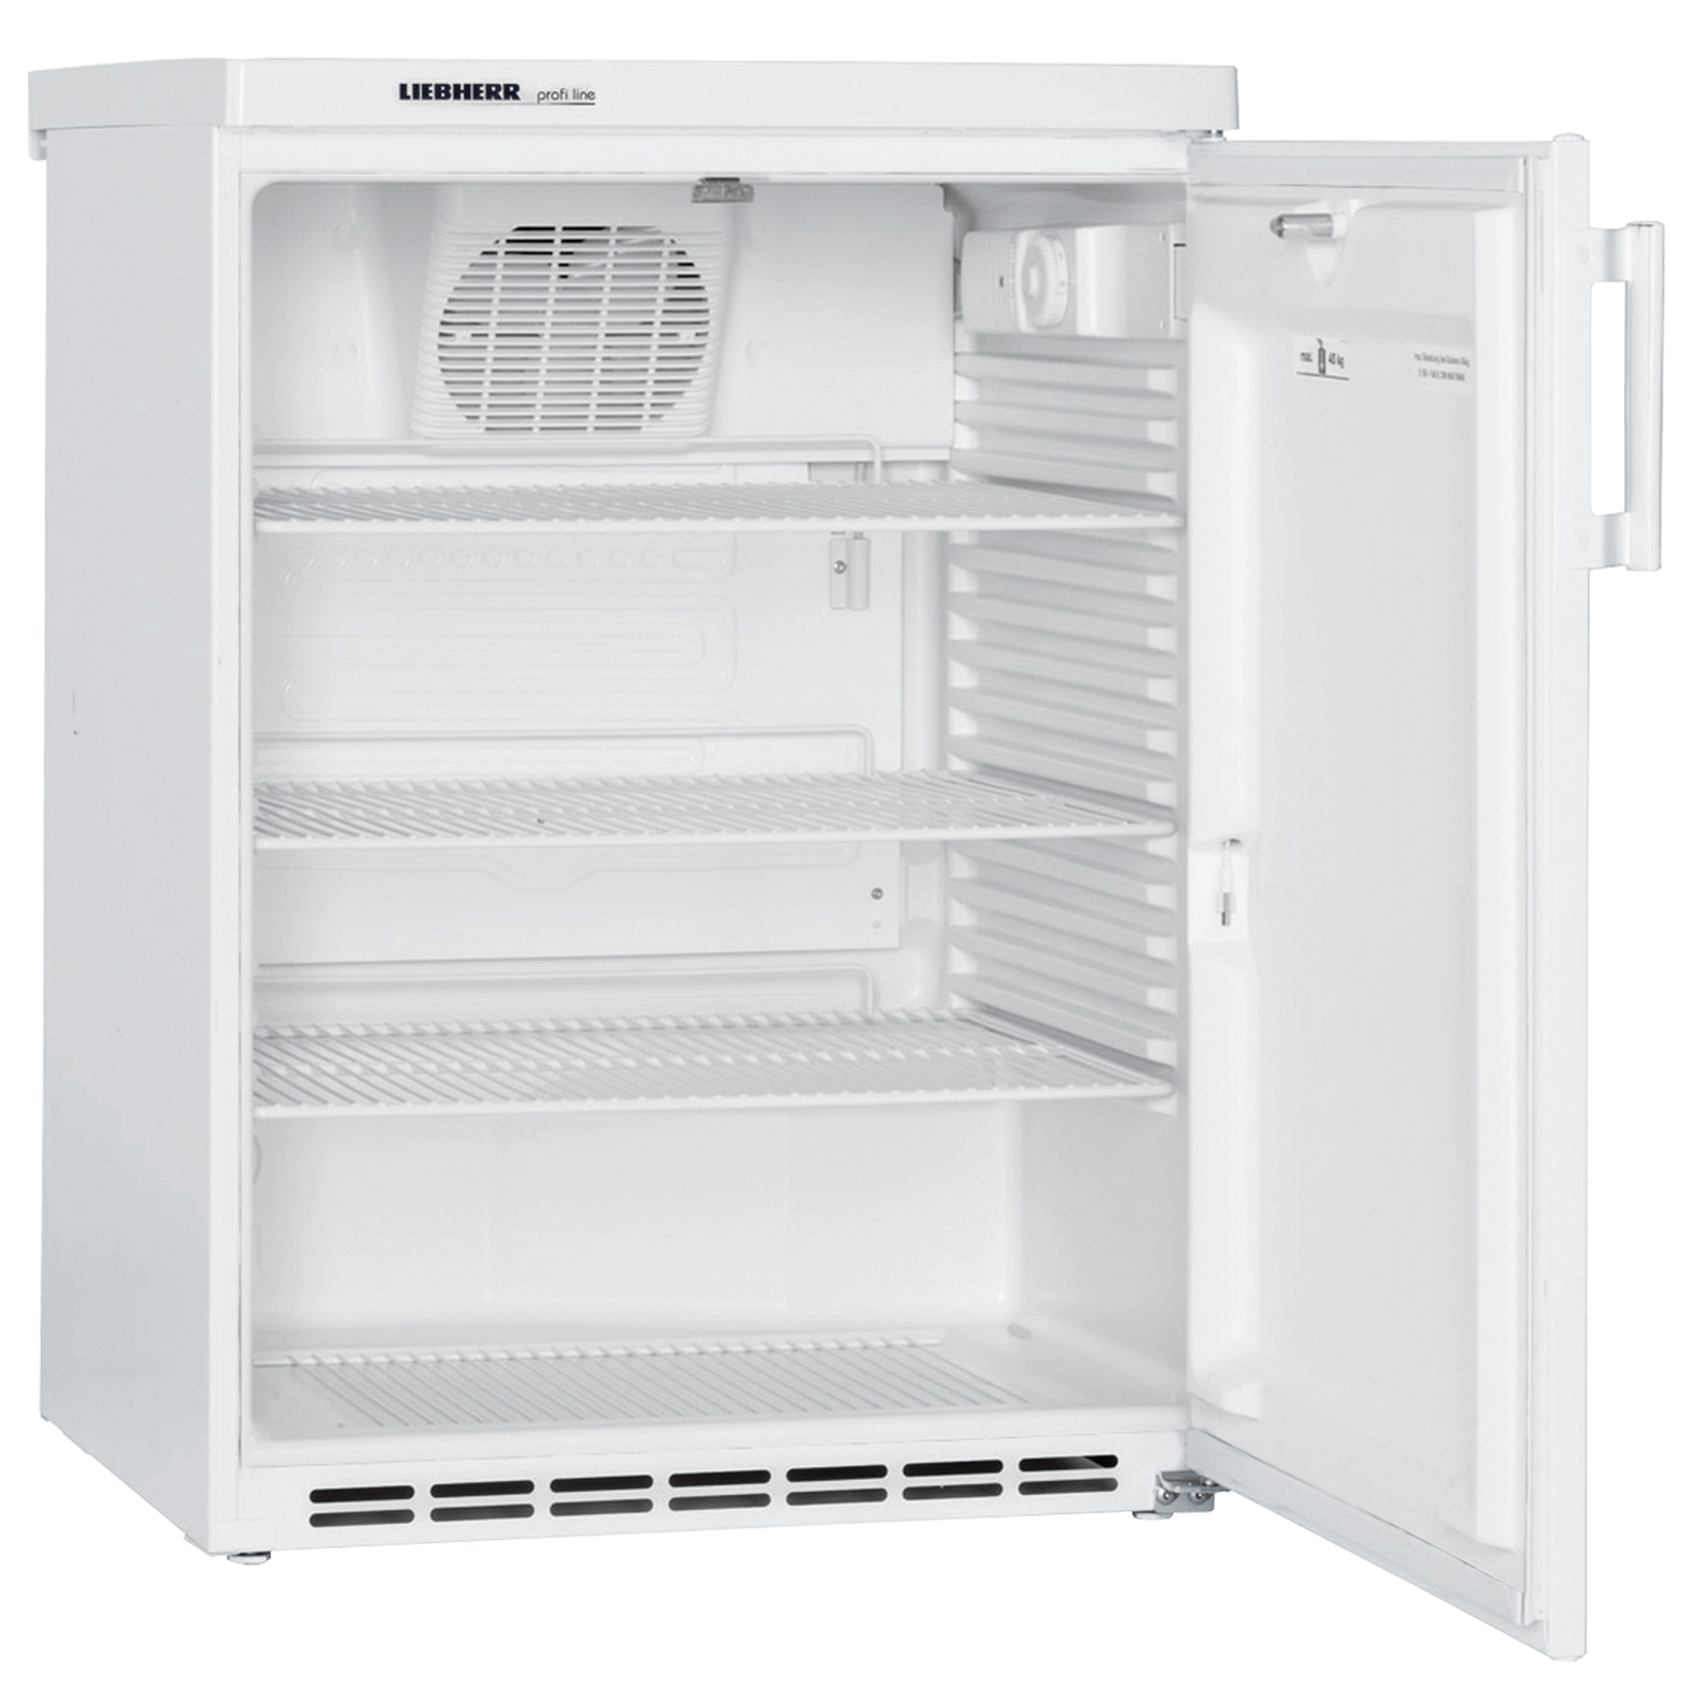 Liebherr FKv 1800 professionele tafelmodel koelkast